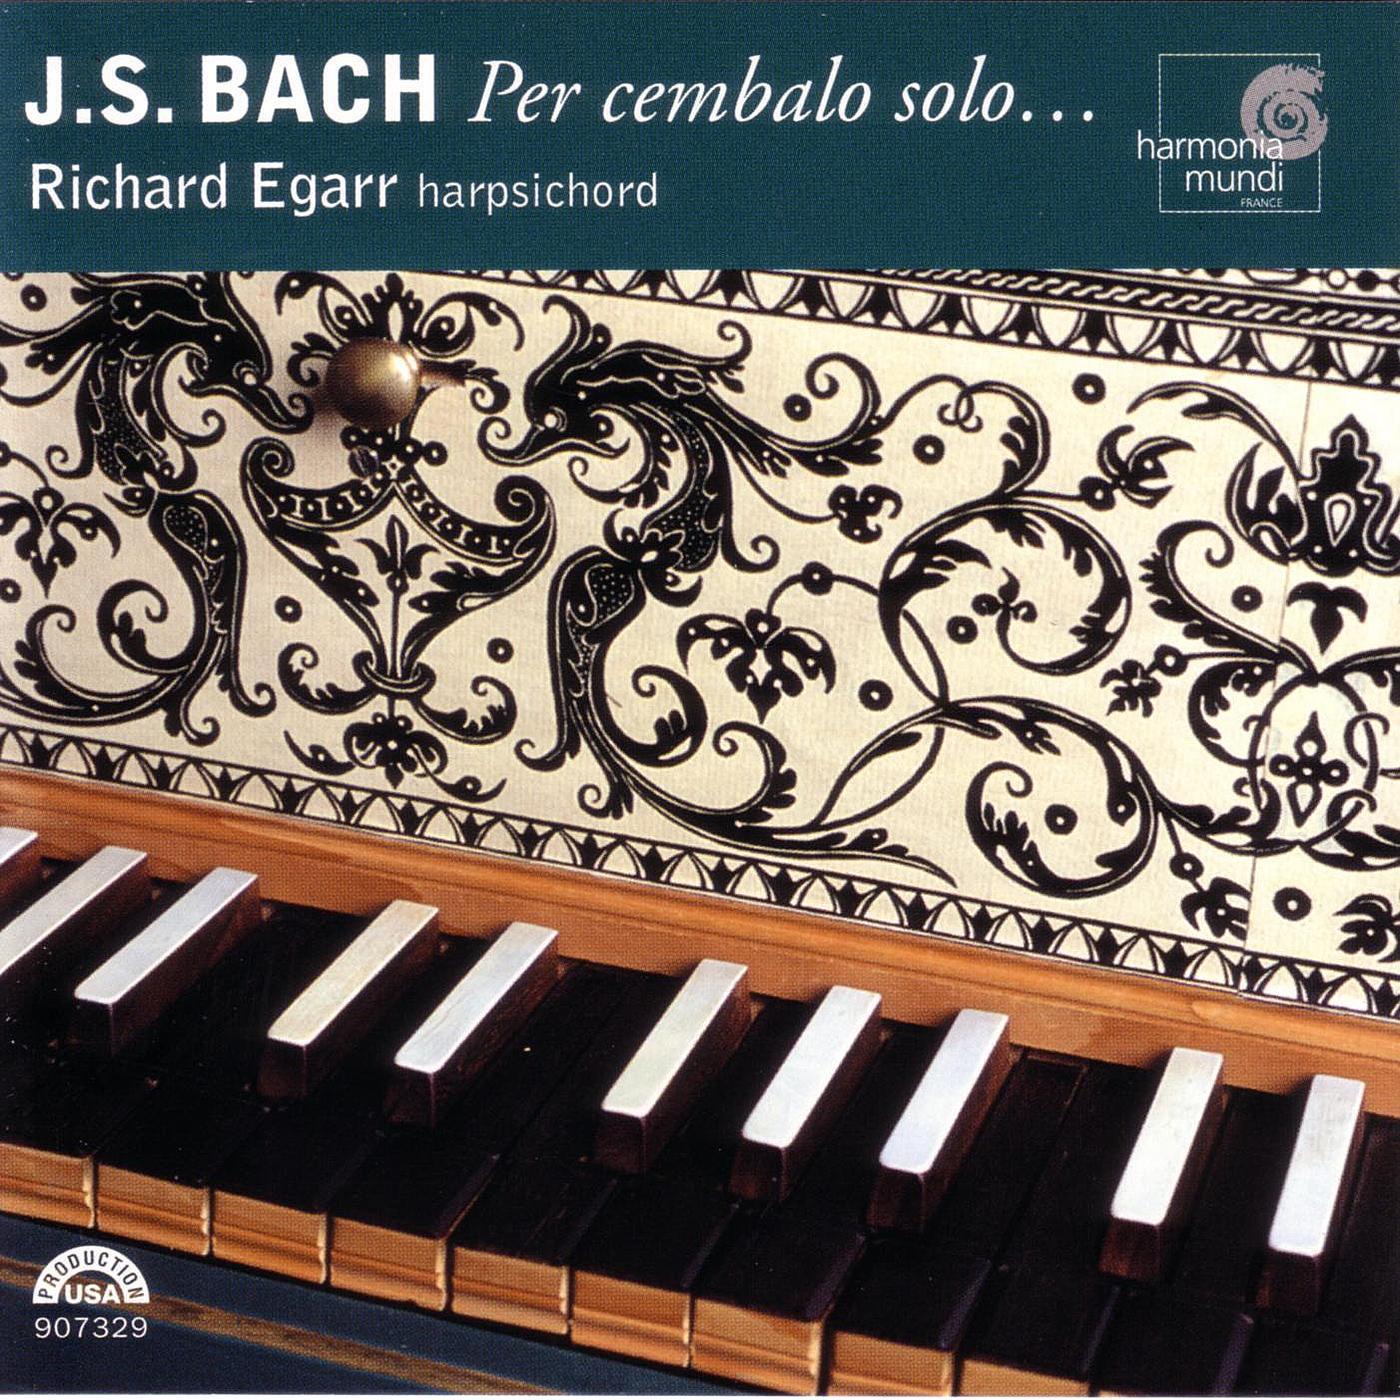 Italian Concerto in F Major, BWV 971: III. Presto